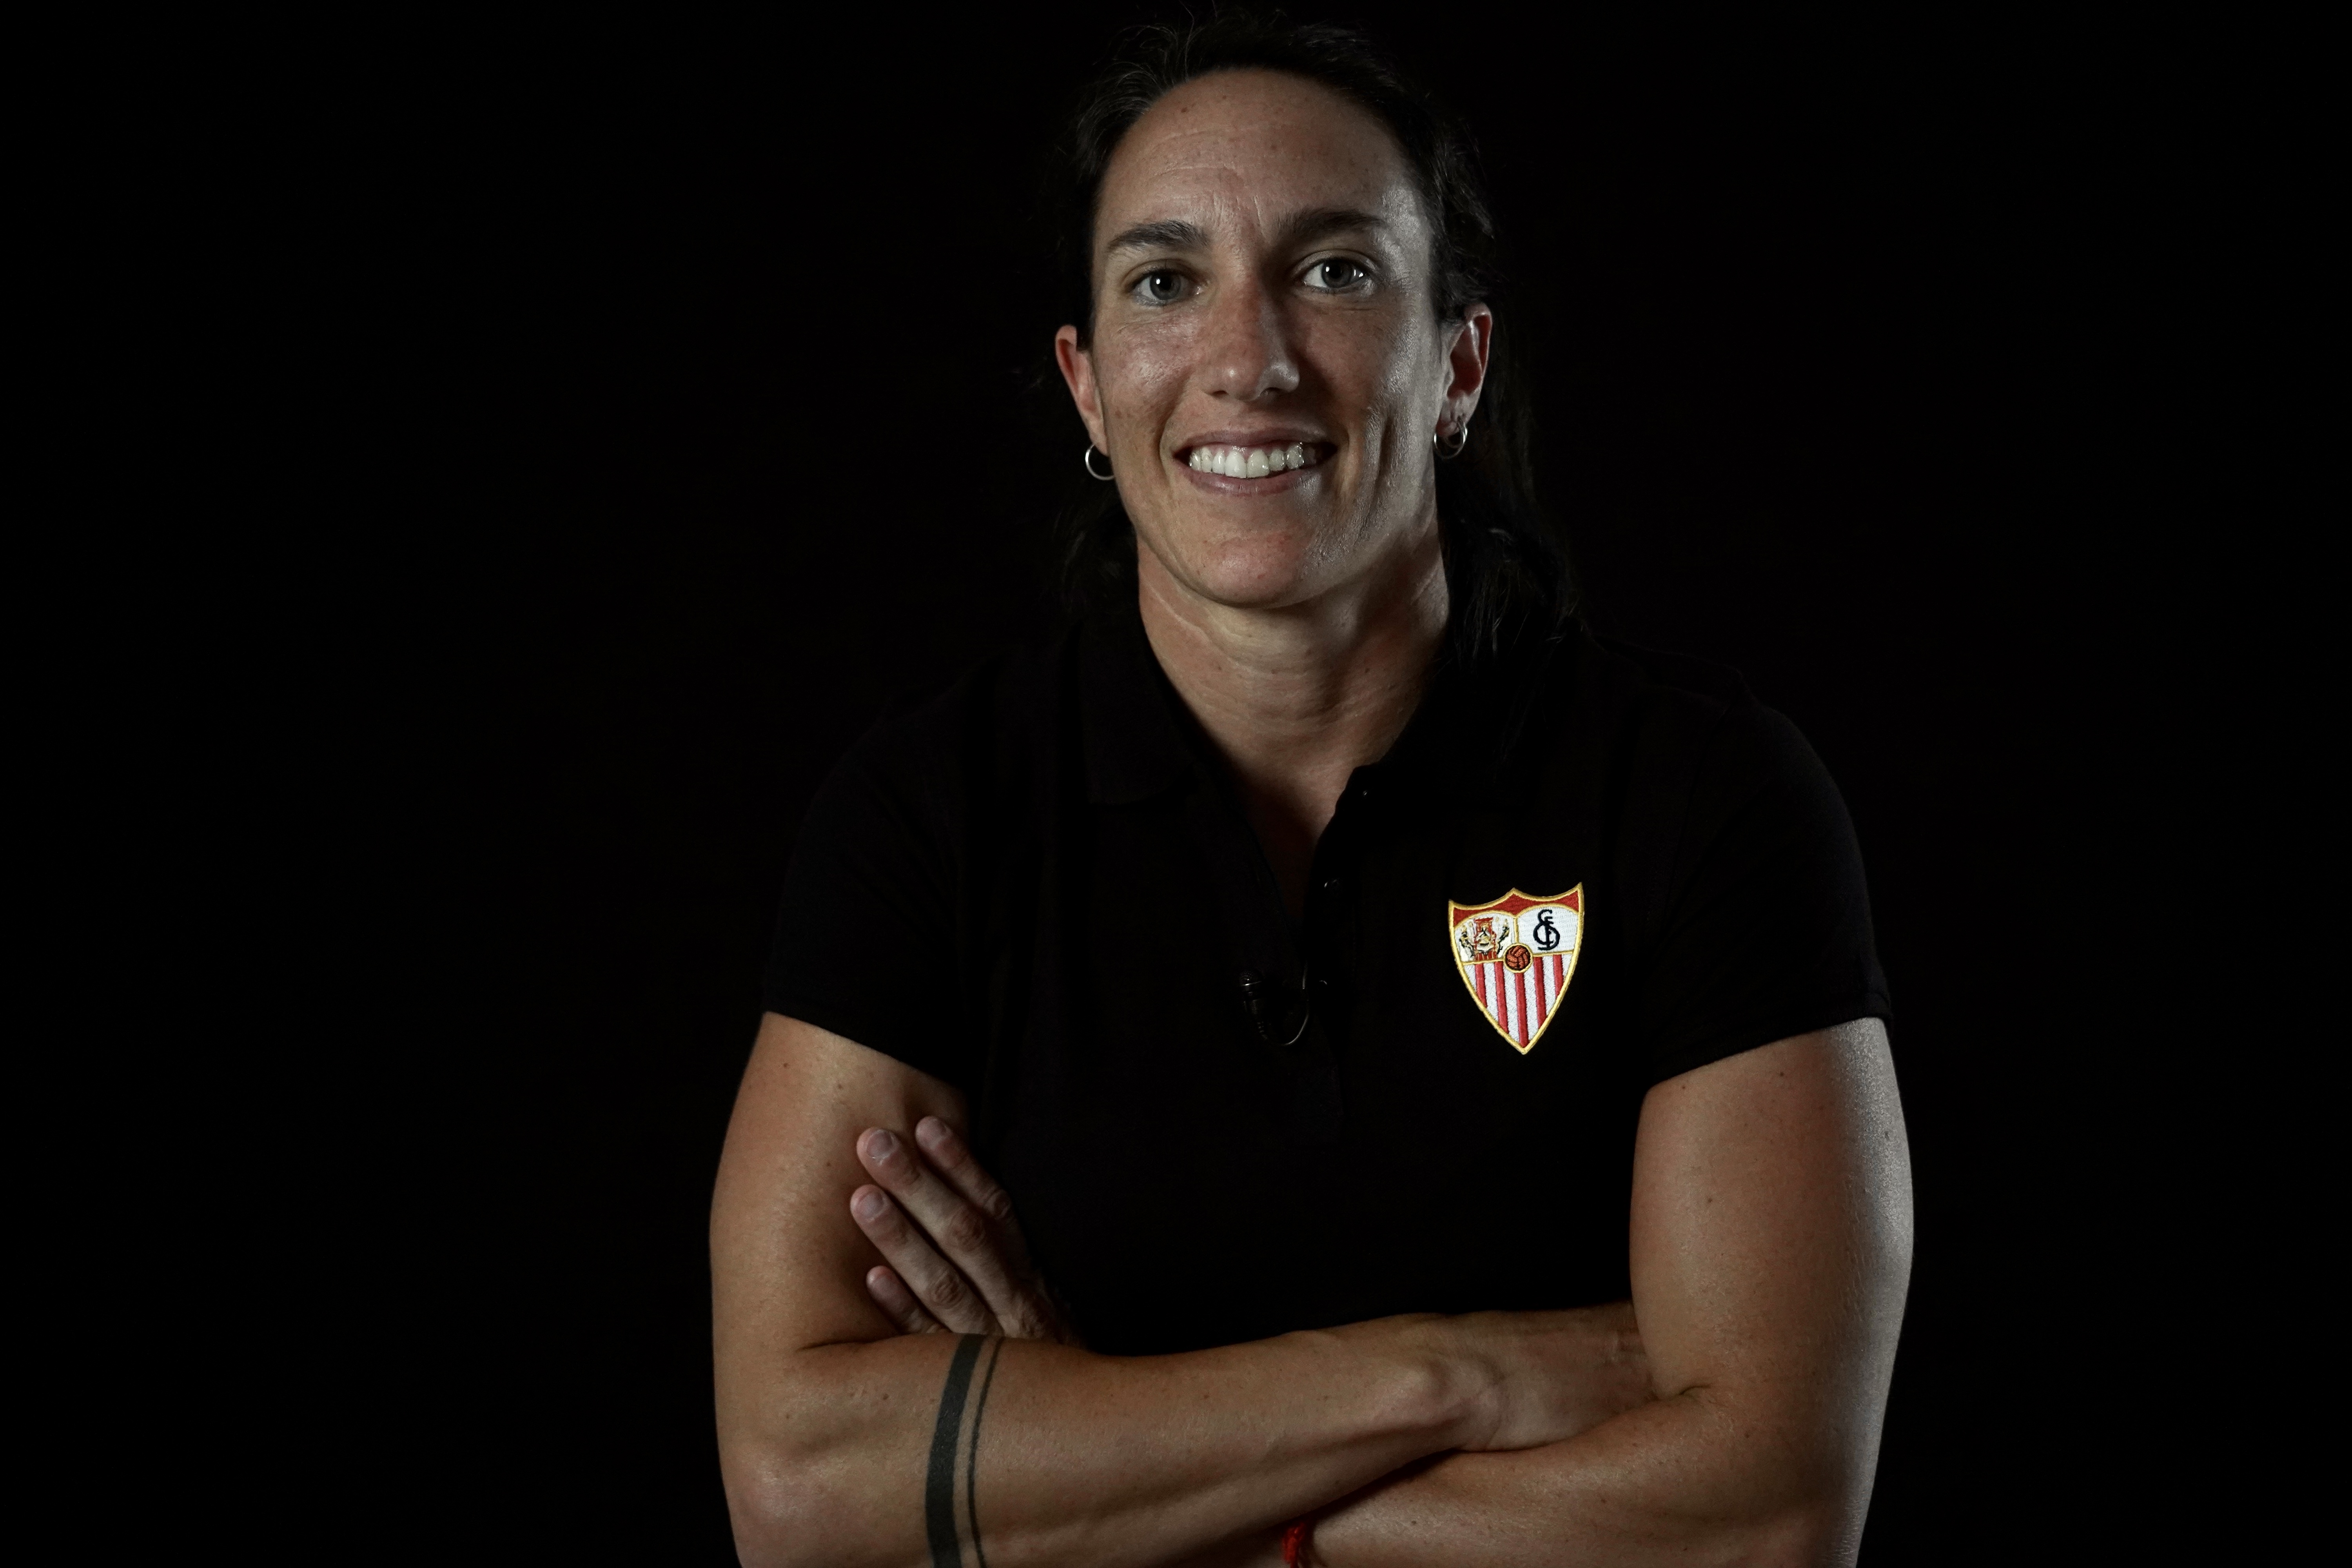 Silvia Meseguer, Sevilla FC Femenino